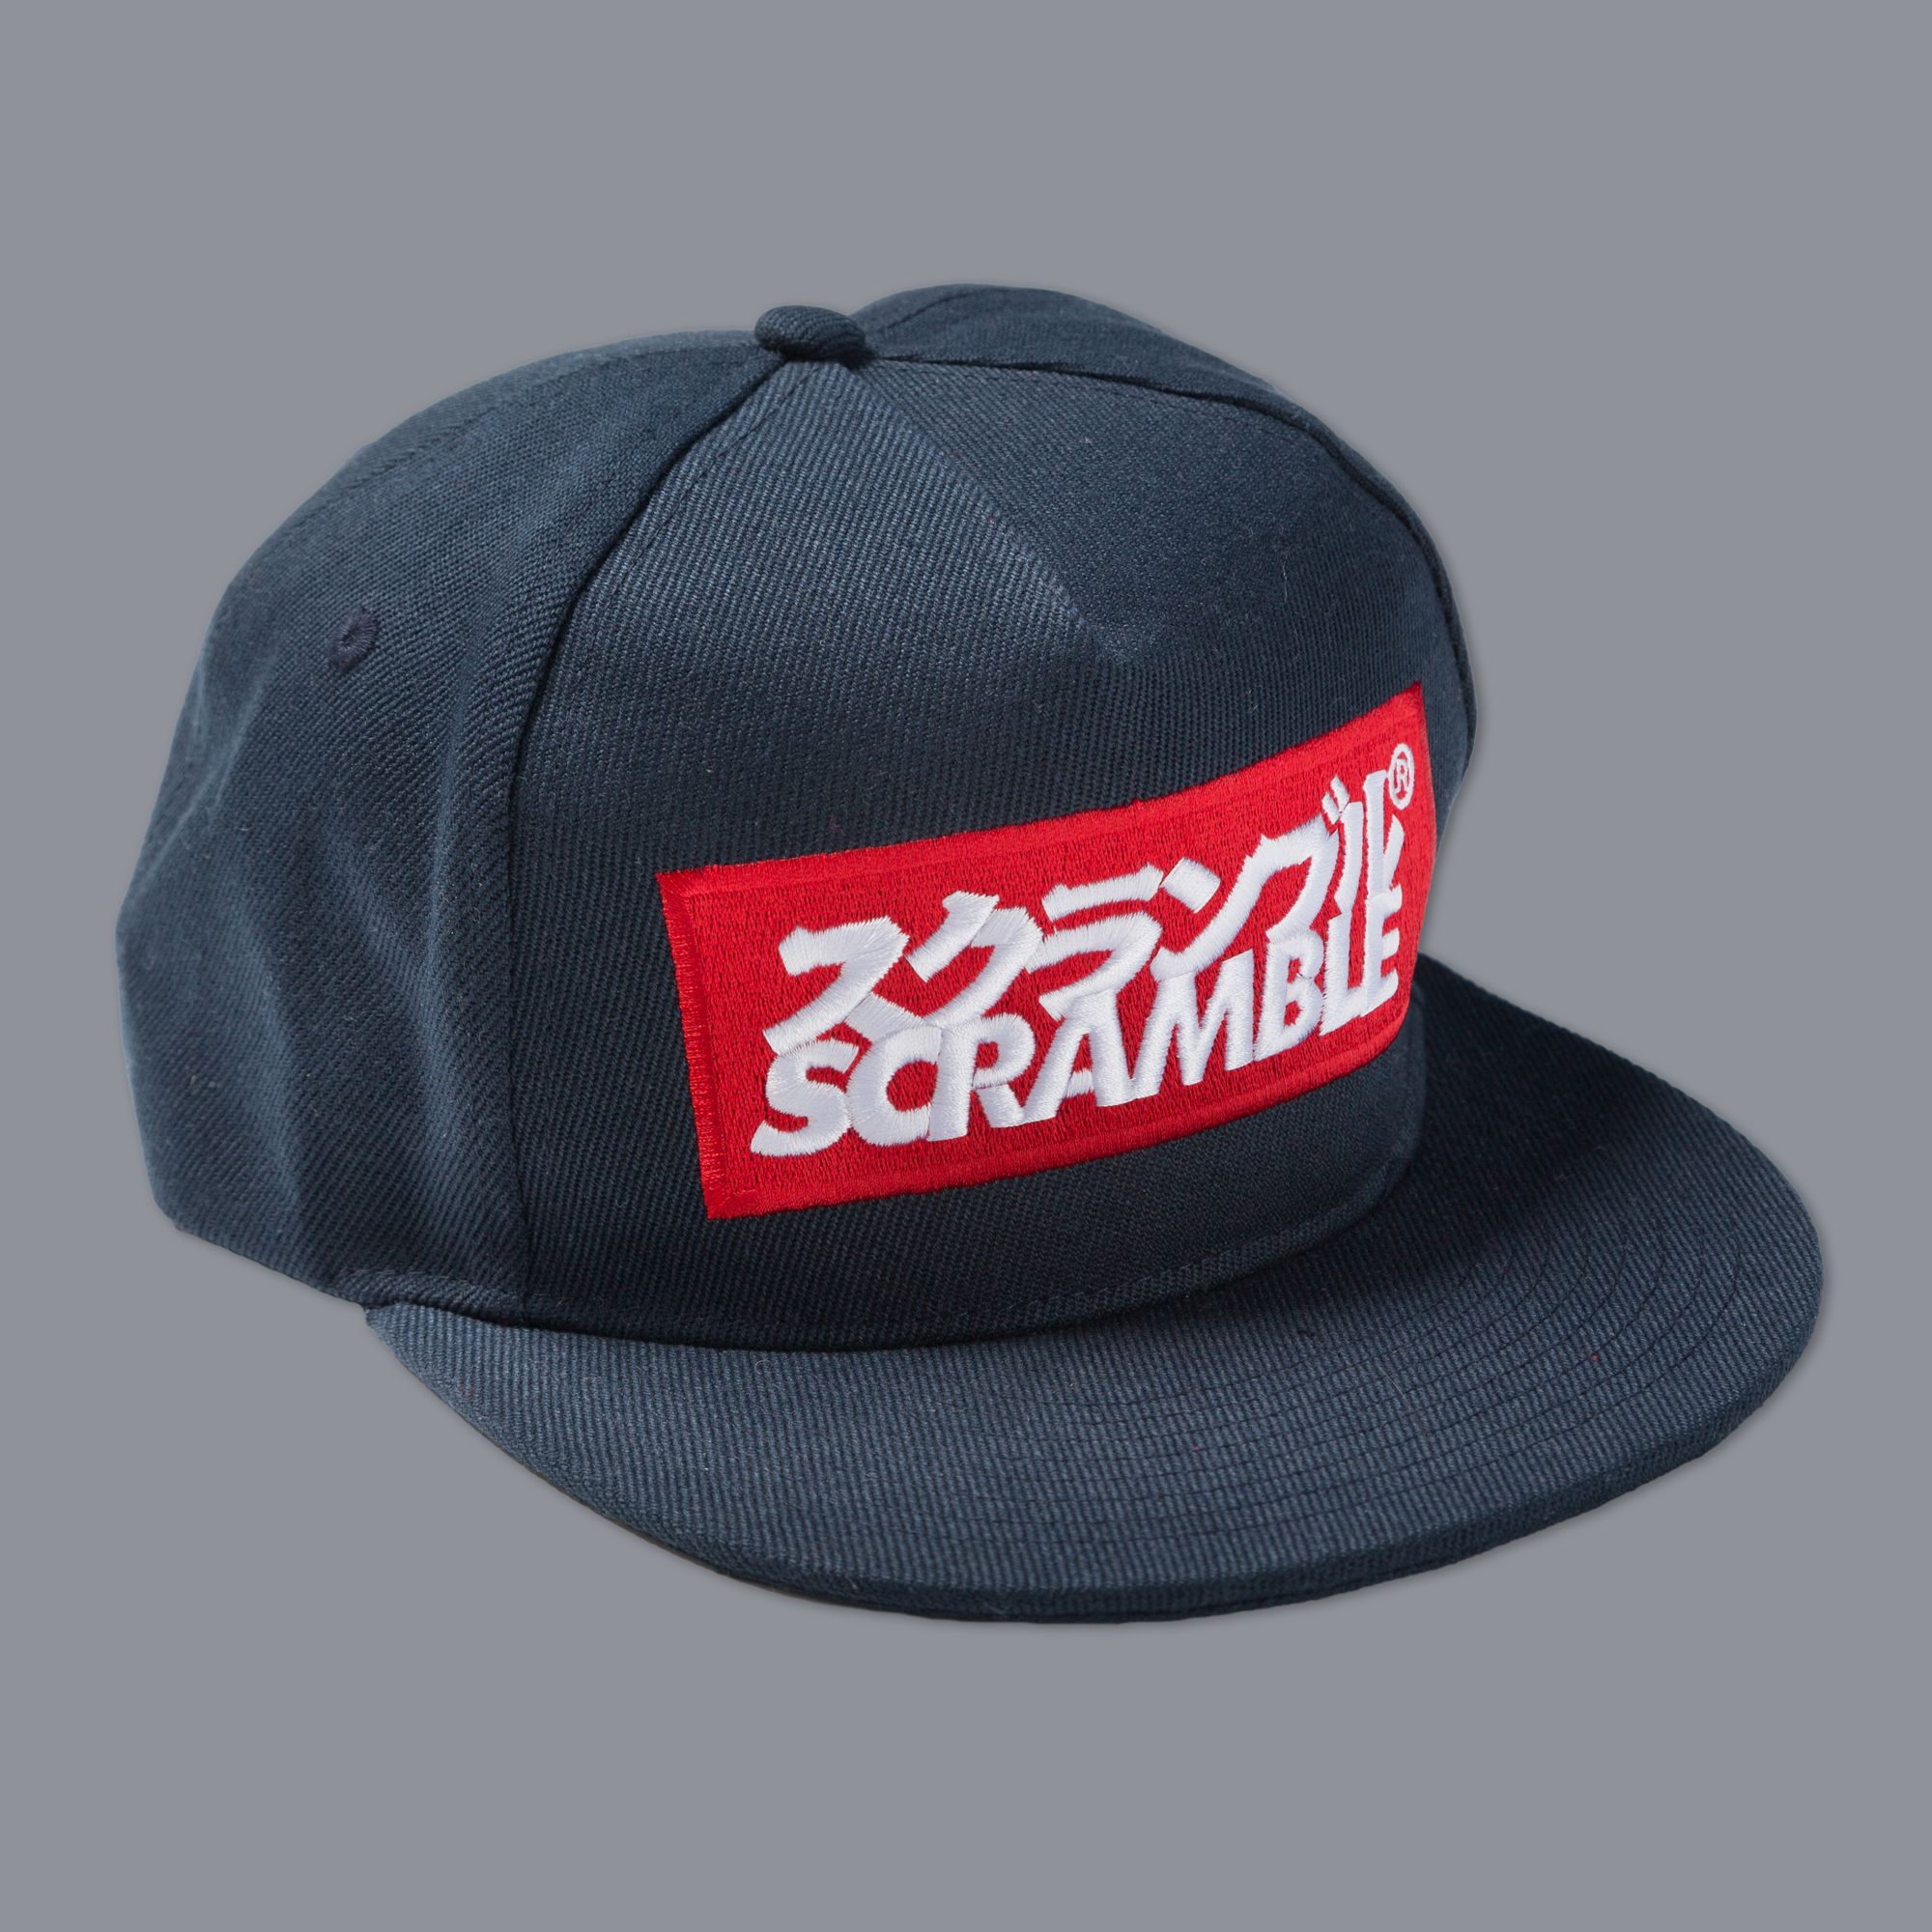 Scramble Logo Cap – Scramble Brand USA